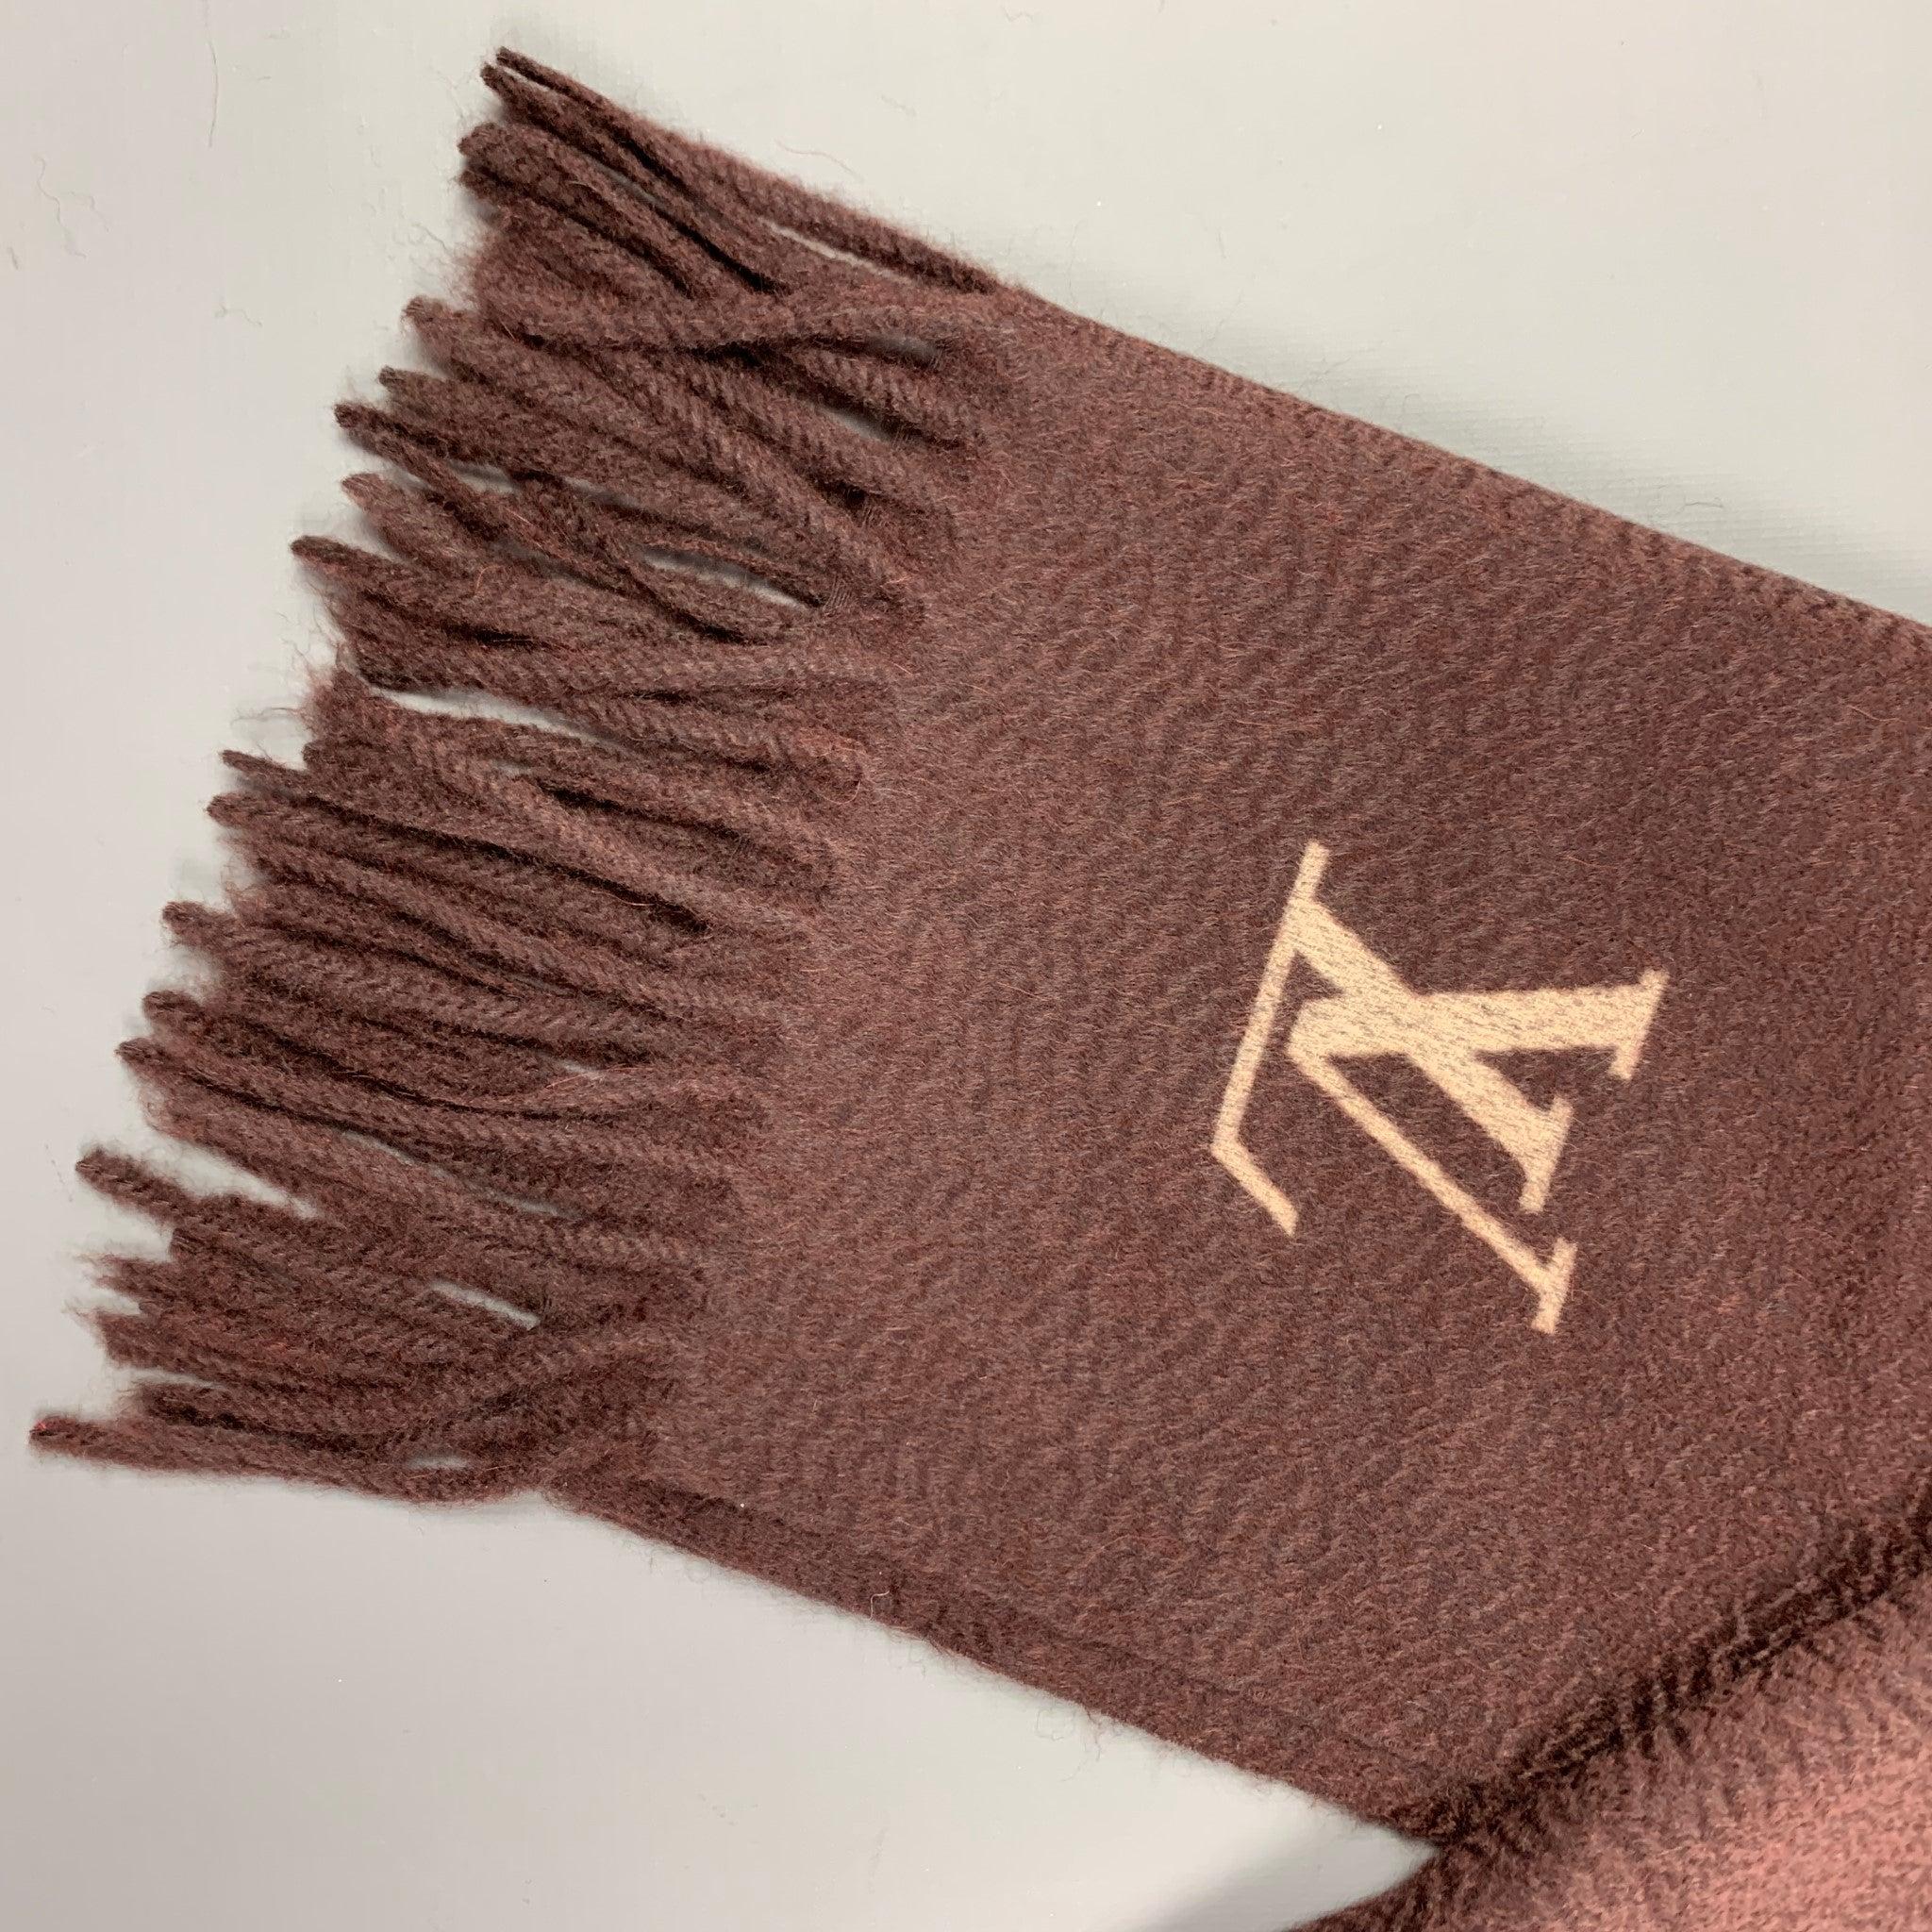 L'écharpe LOUIS VUITTON est un cachemire tricoté marron avec un logo et des franges. Fabriquées en Italie.
Très bien
Etat d'occasion. 

Mesures : 
  66 pouces  x 15 pouces 
  
  
 
Référence : 116528
Catégorie : Foulards
Plus de détails
    
Marque